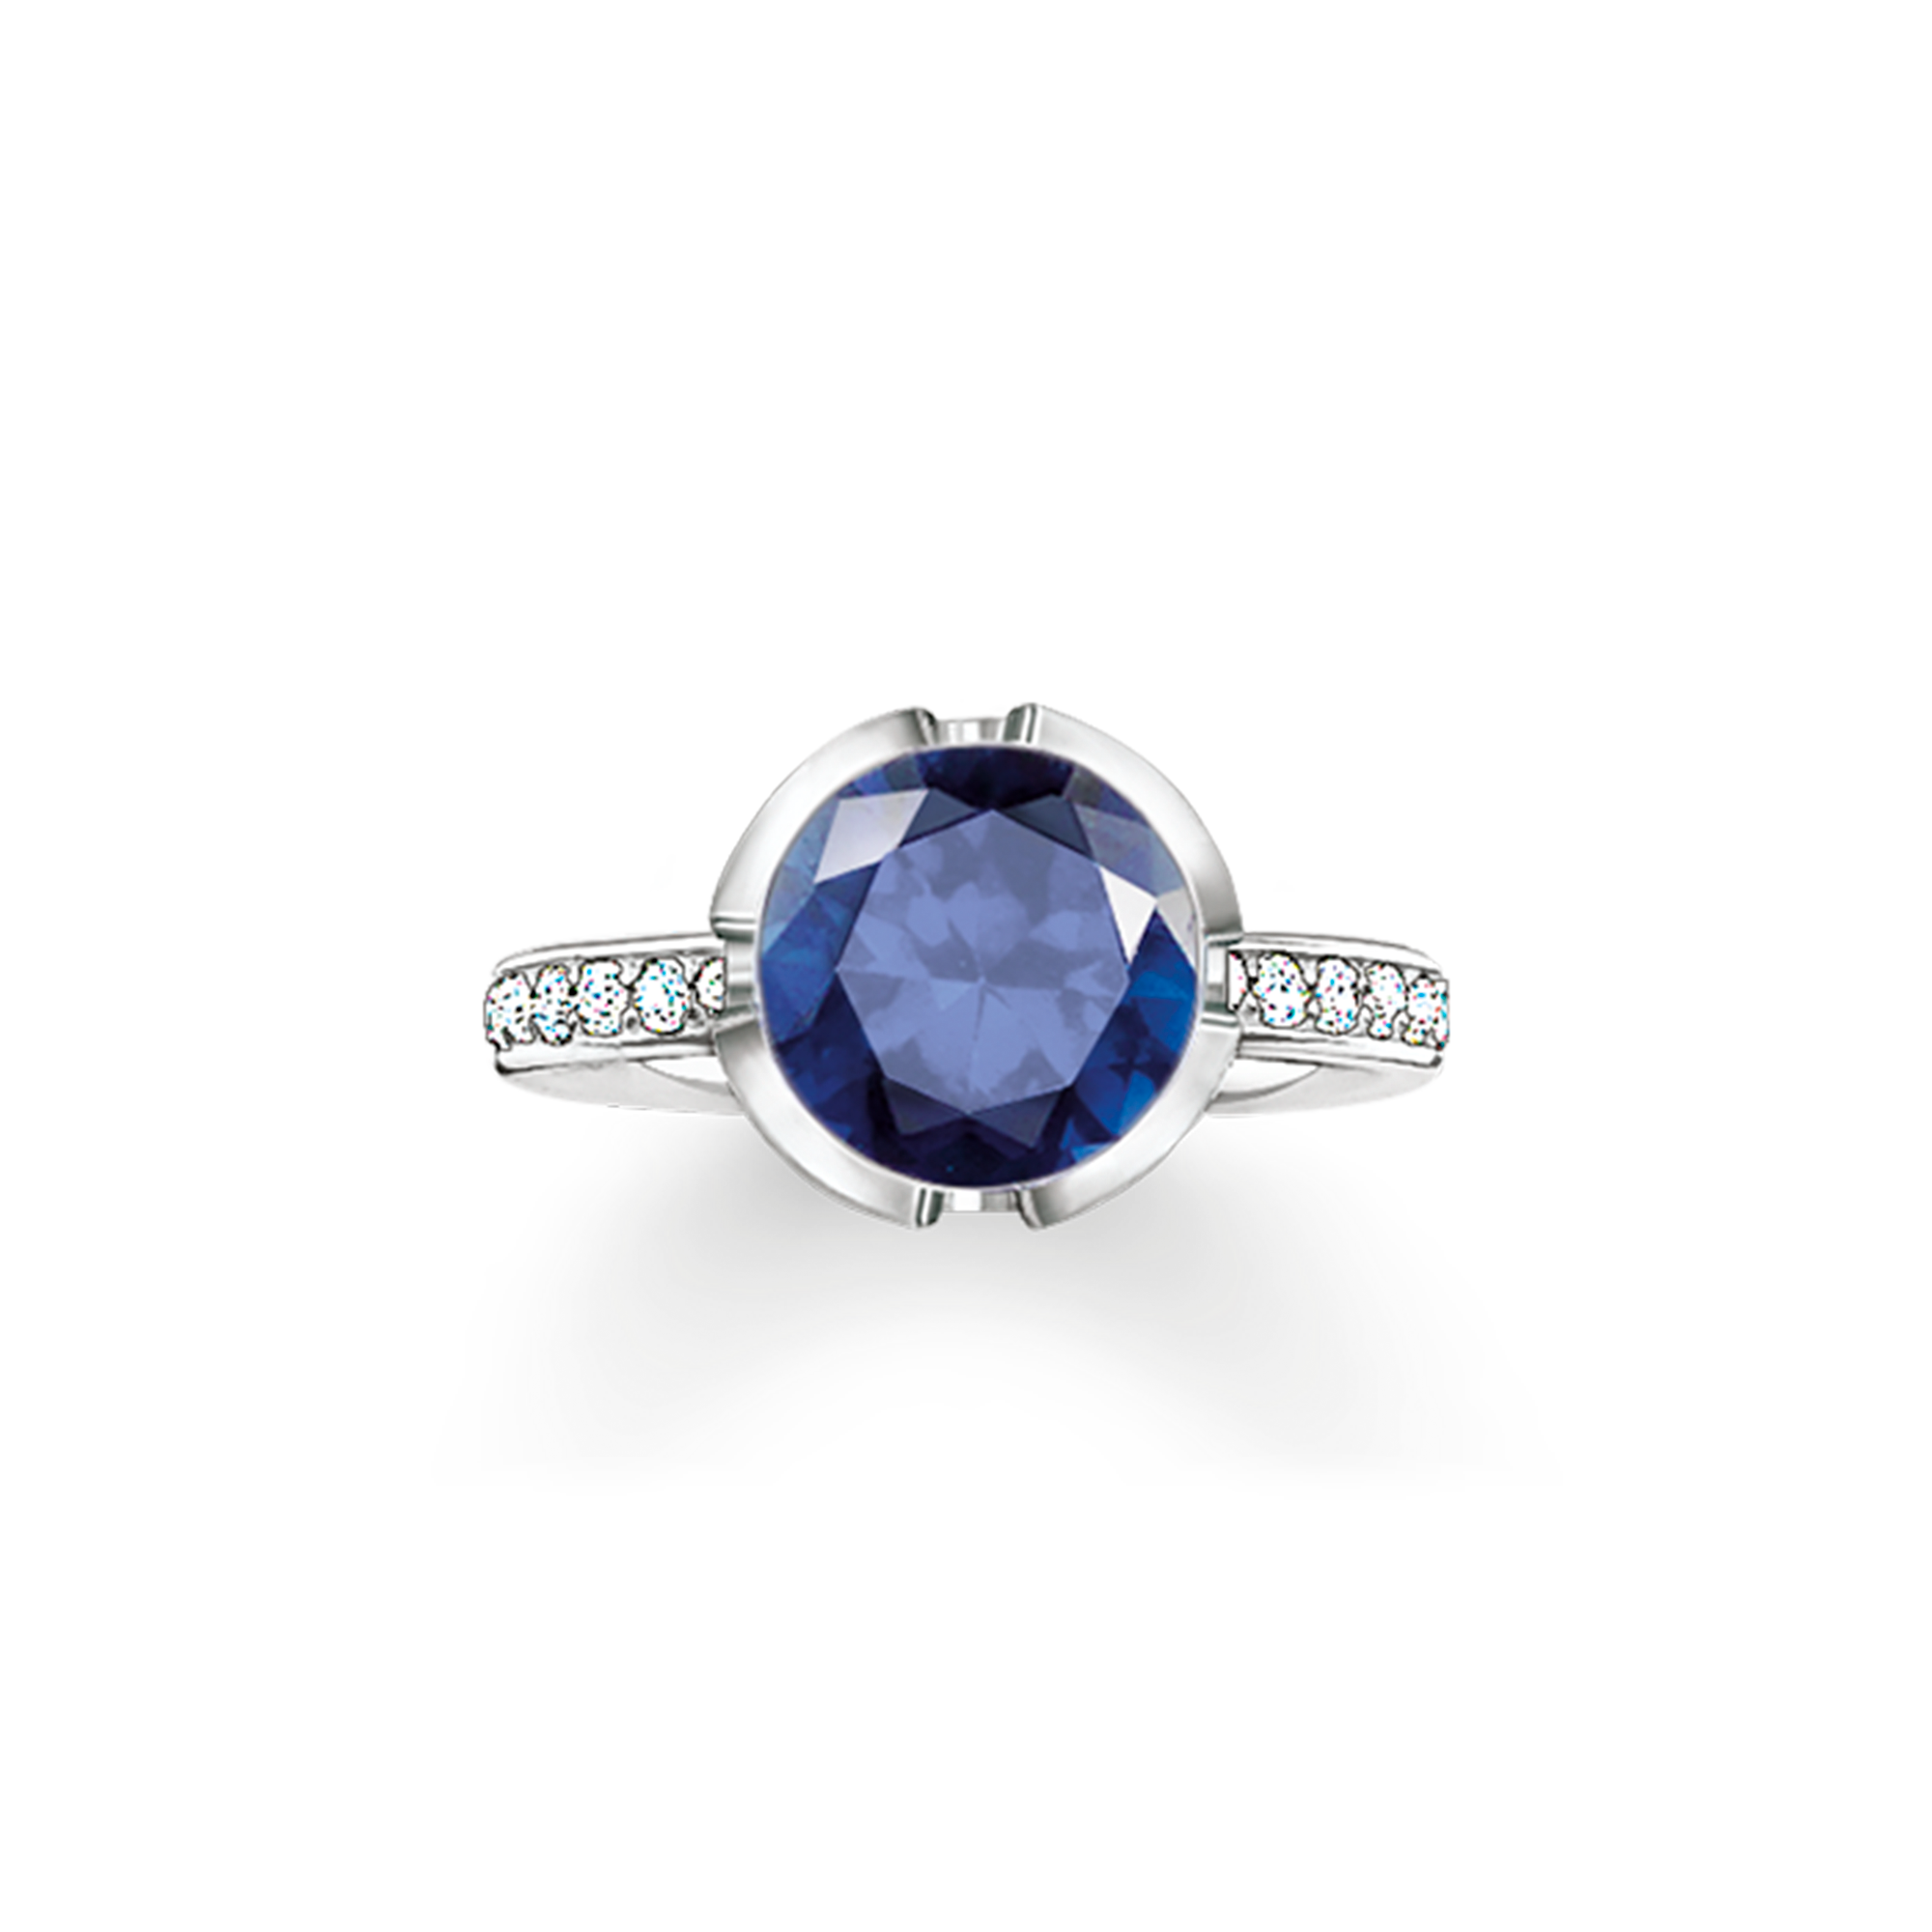 Ein klassischer Ring mit besonderer Raffinesse: Die außergewöhnliche Fassung aus stilisierten TS Initialen durchflutet den blauen synthetischen Korund mit funkelnden Lichtreflexen und strahlt neben weißem Zirkonia-Pavé. - 0